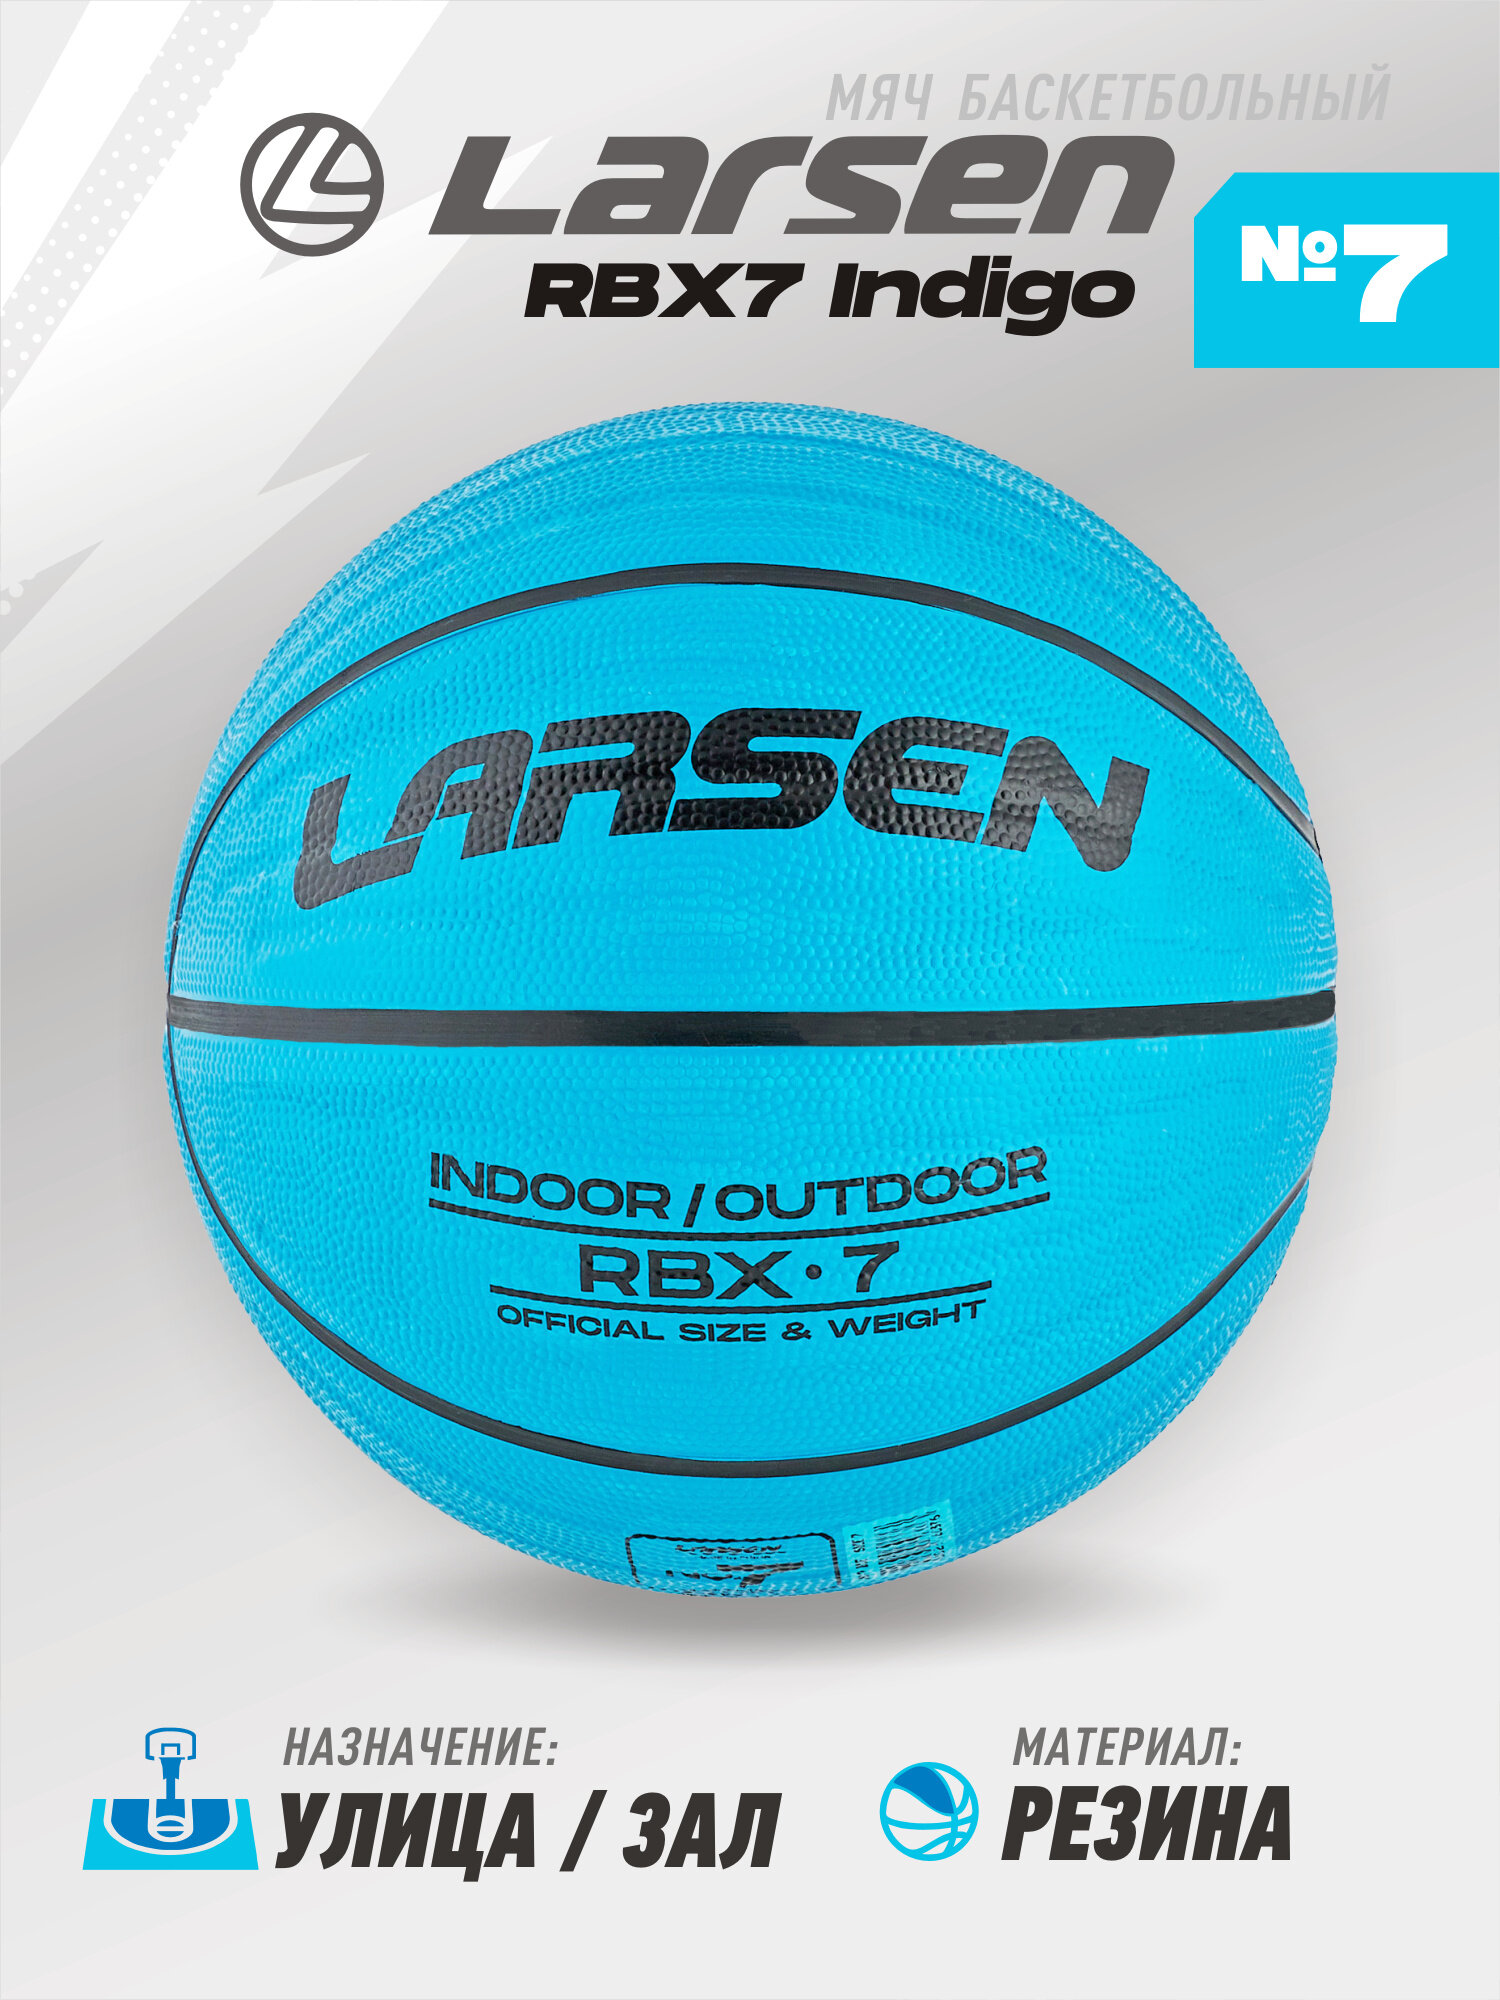   Larsen RBX7 Indigo